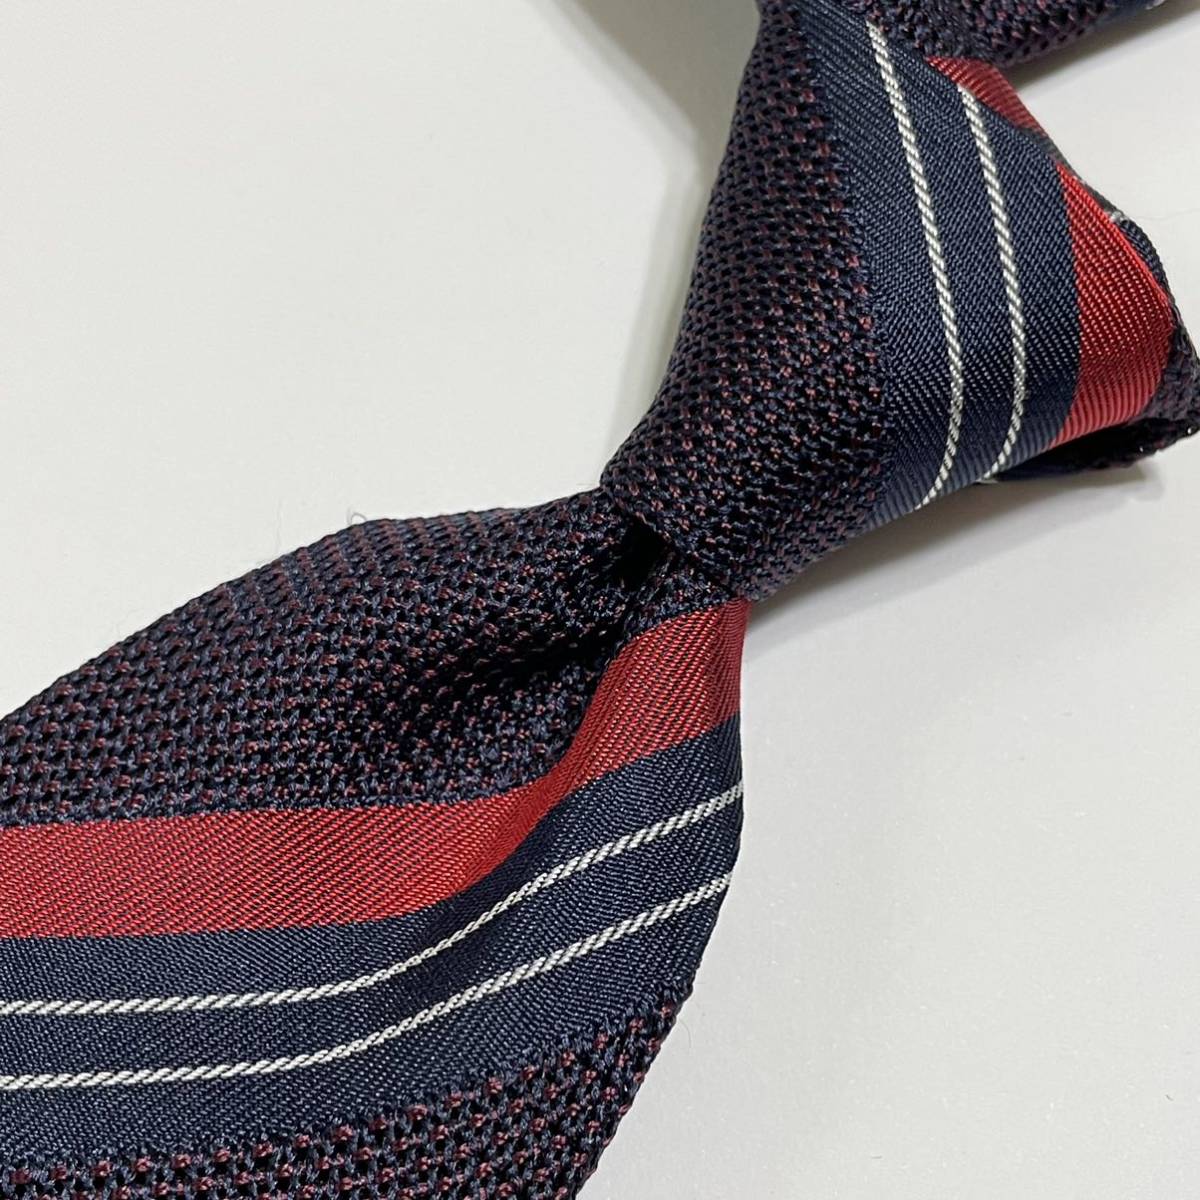  новый товар Италия. галстук . индустрия бренд FIORIO /fio rio шелк сетка полоса галстук красный UNITED ARROWS покупка 